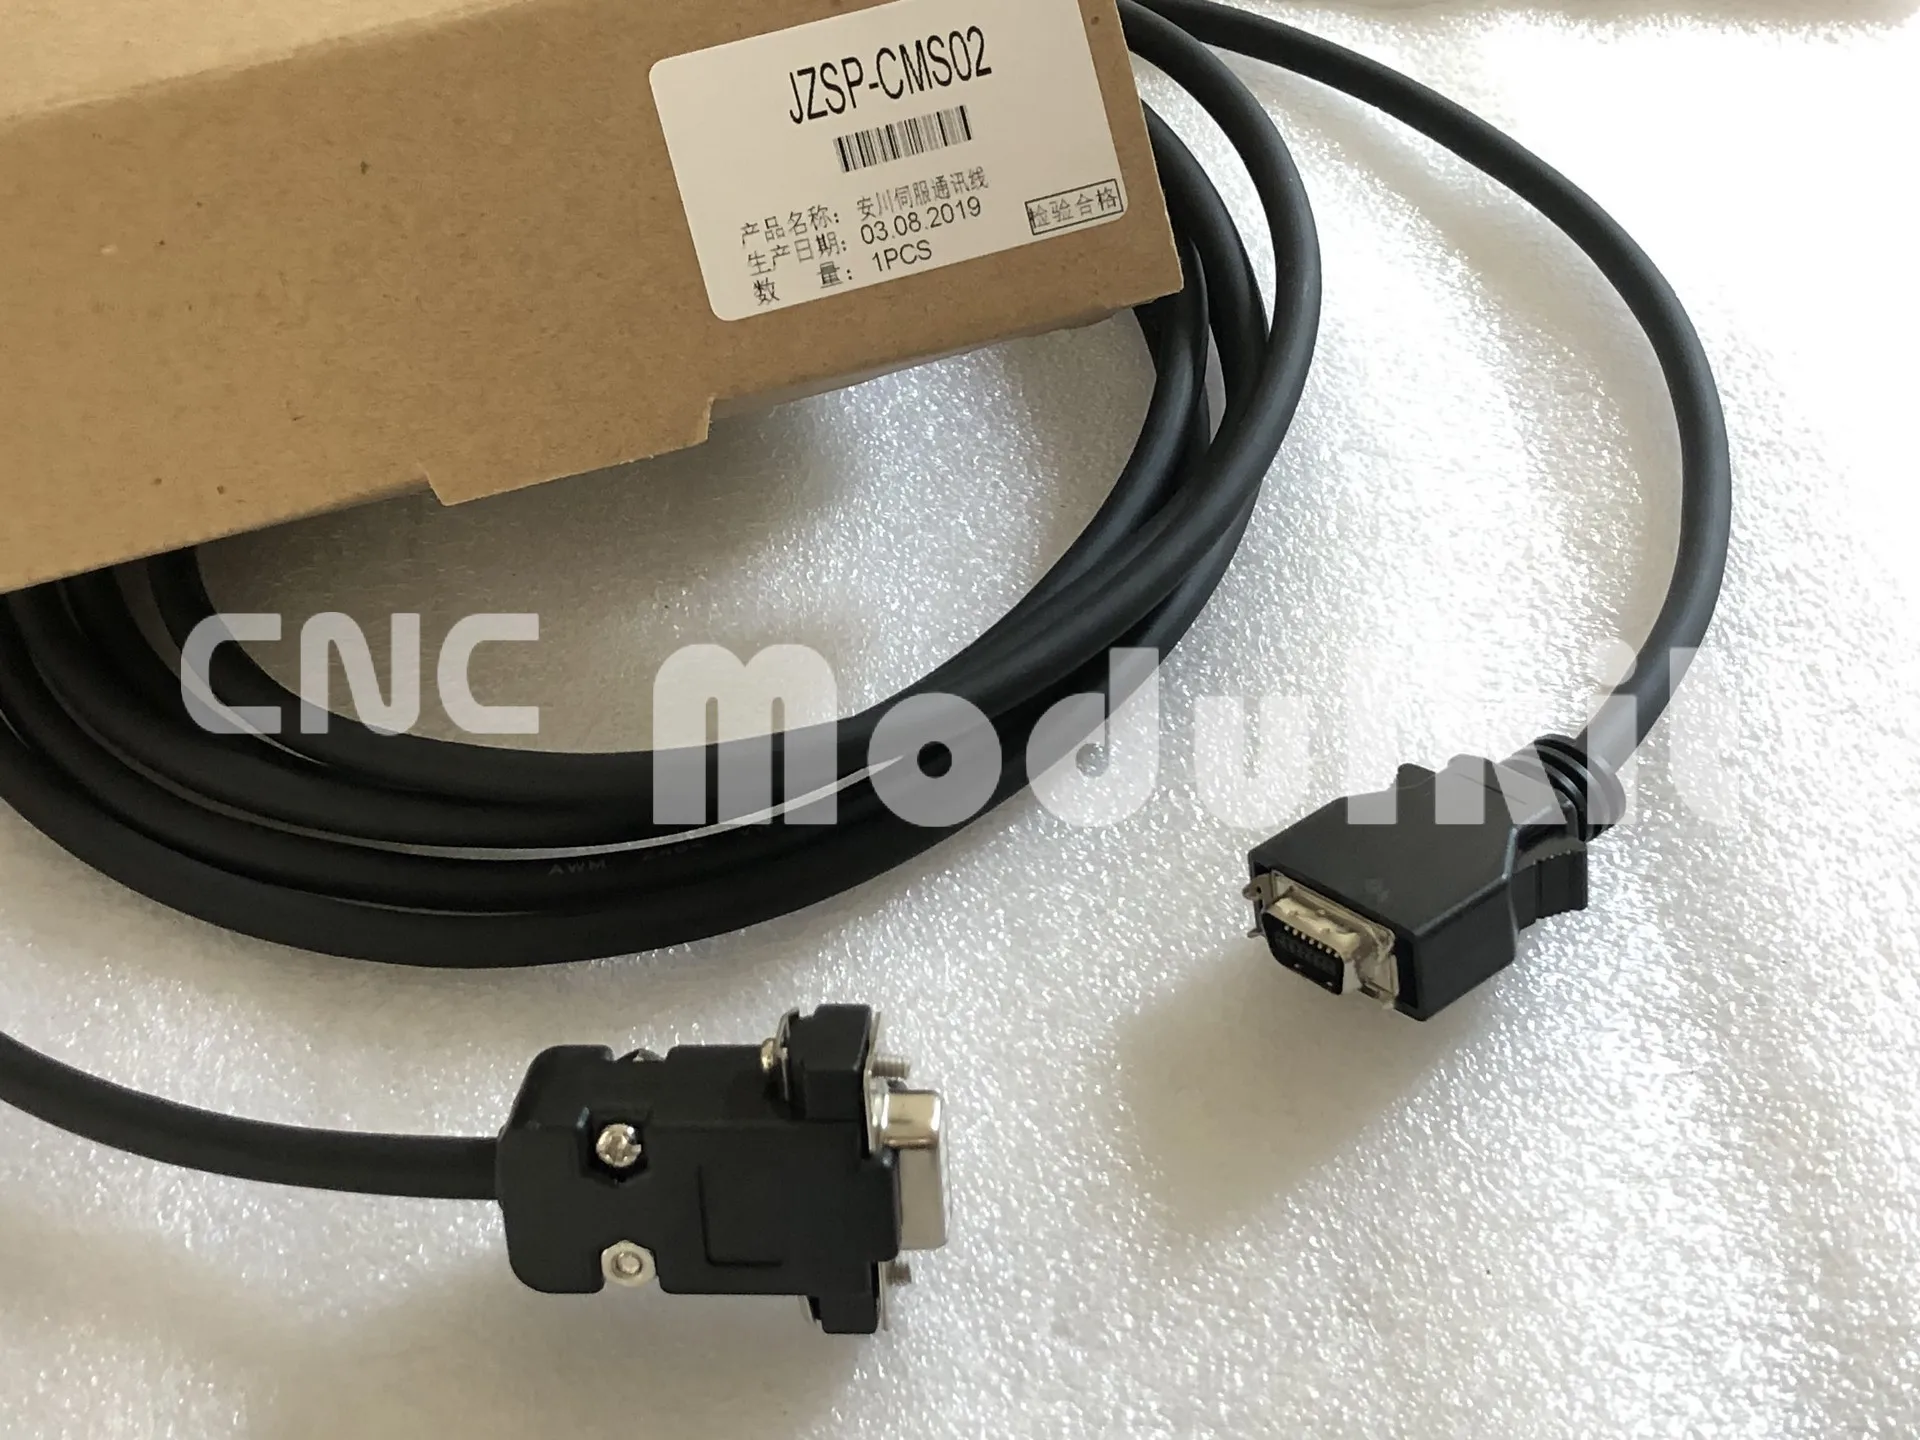 Yaskawa JZSP-CHI003-02 Junma Control I/O cable New NFP 